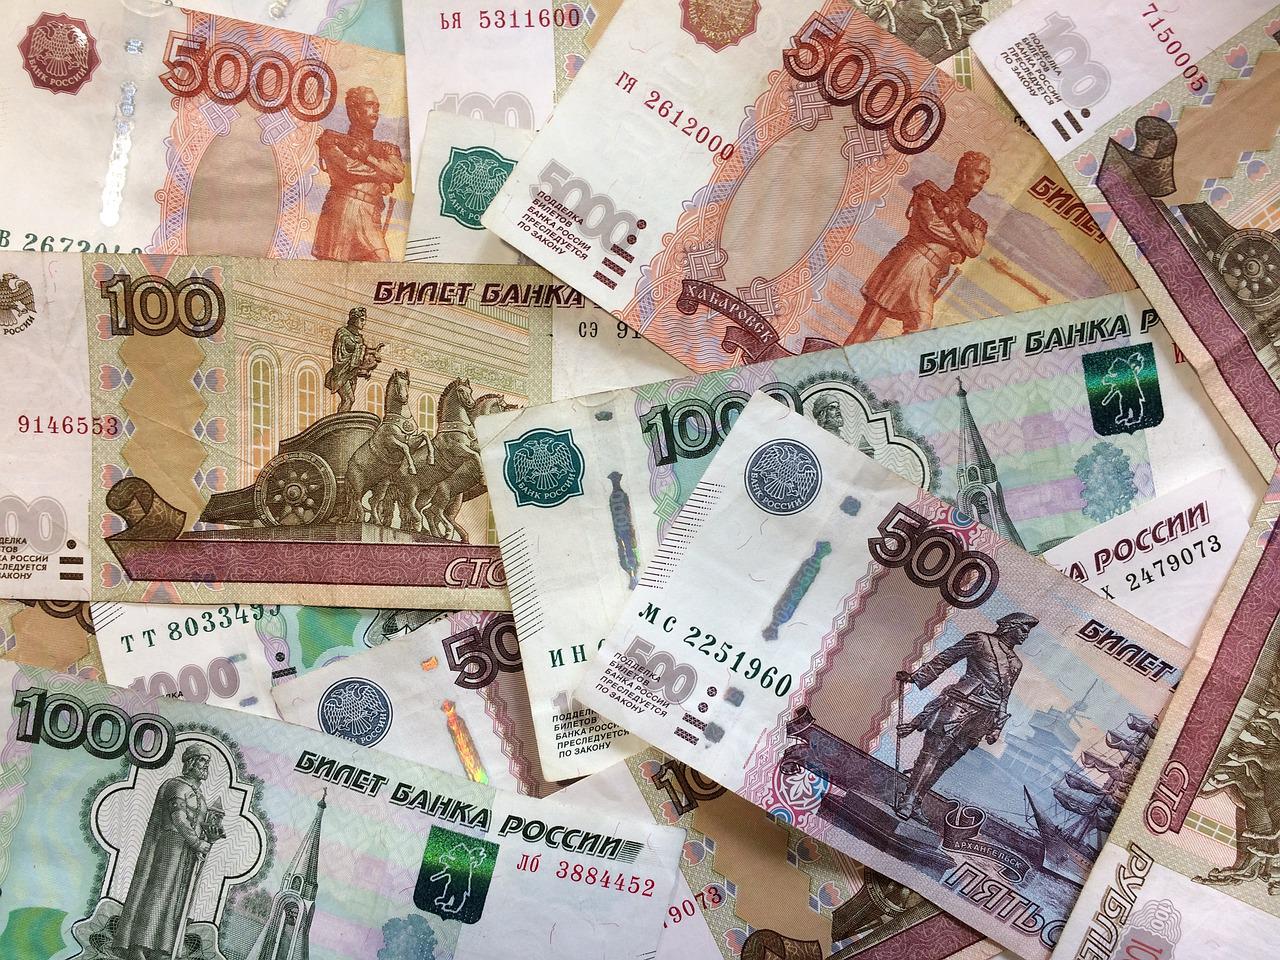 Доверчивый житель Пензы перечислил мошеннику более 400 тыс. рублей